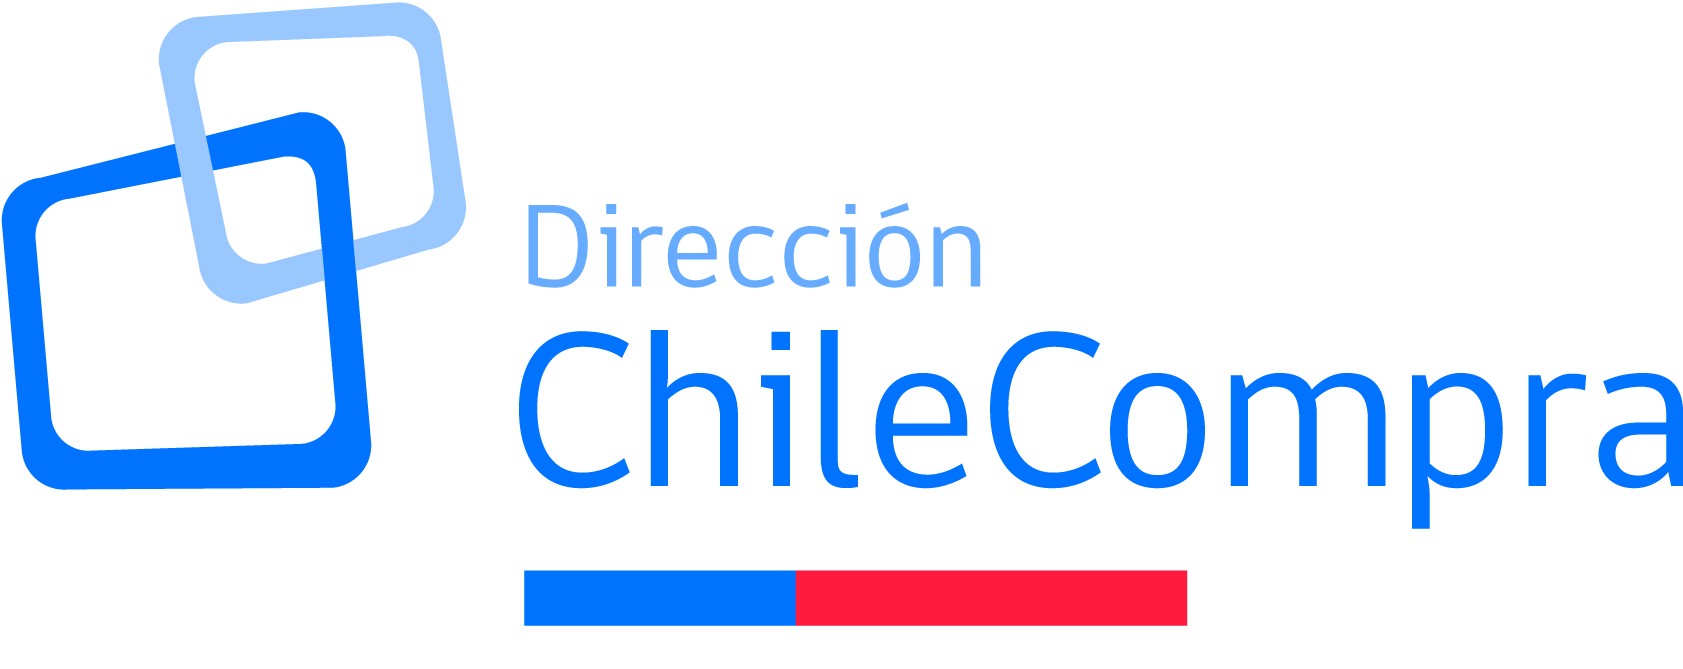 Mercado Público: La Plataforma de Compras y Licitaciones en Chile